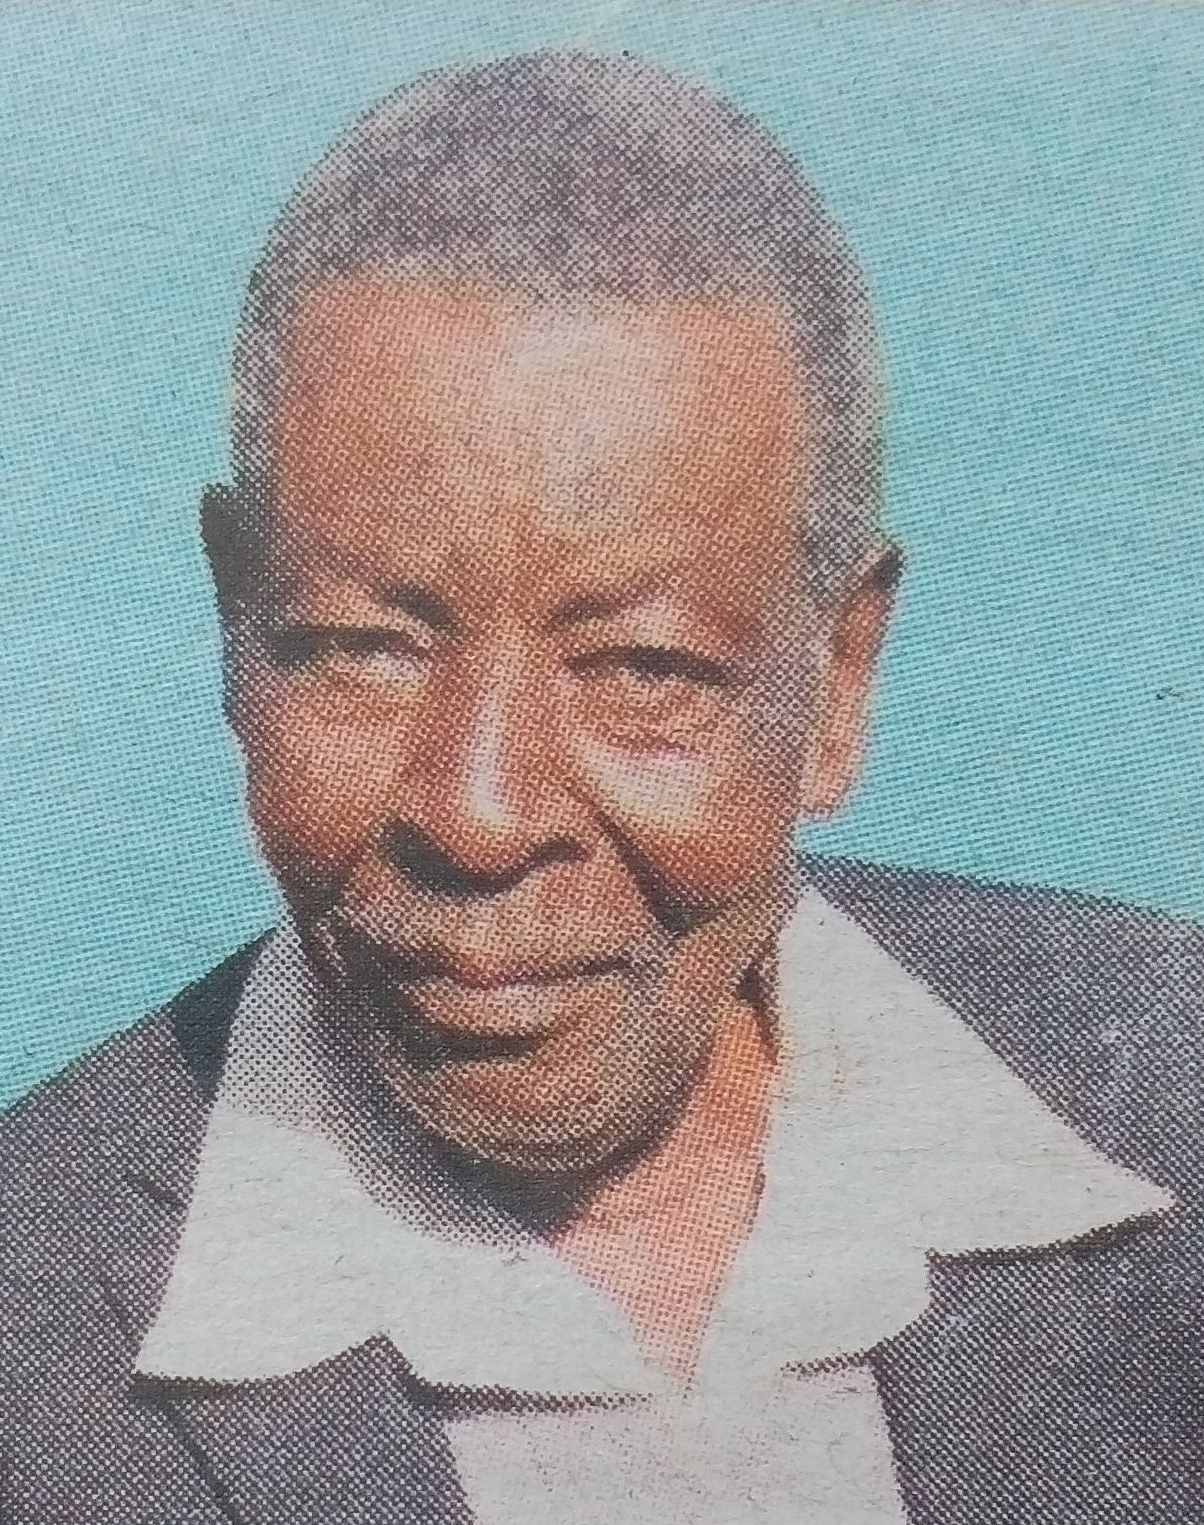 Obituary Image of Mzee Shadrack Kayanda Kotia